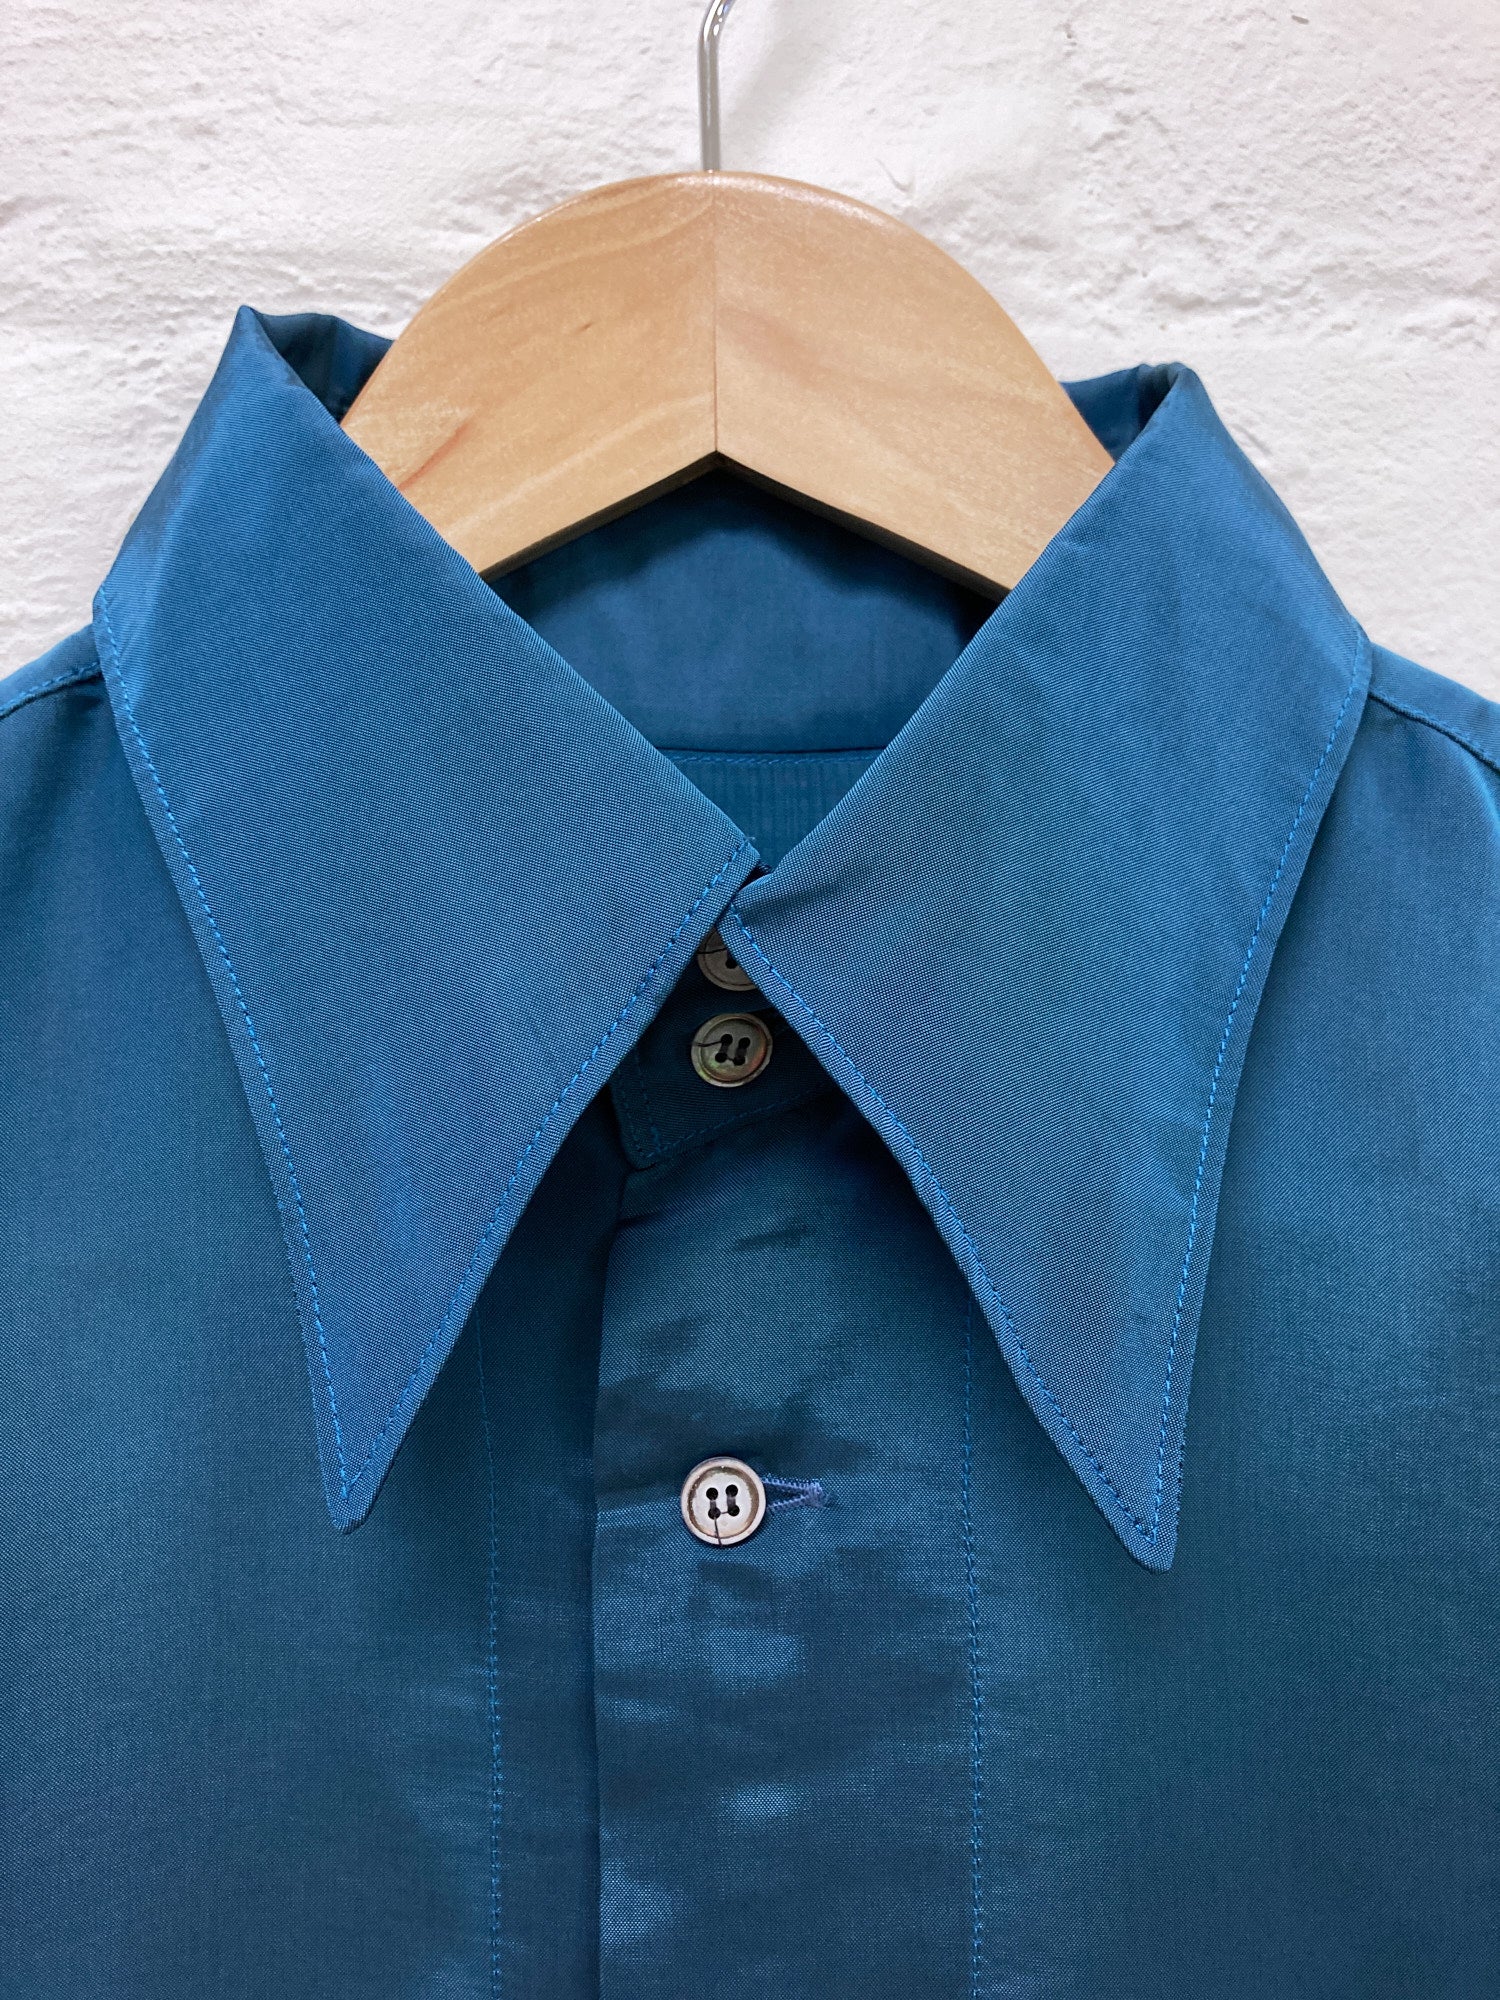 Pashu Shin Hosokawa 1980s blue satin high collar shirt - L M